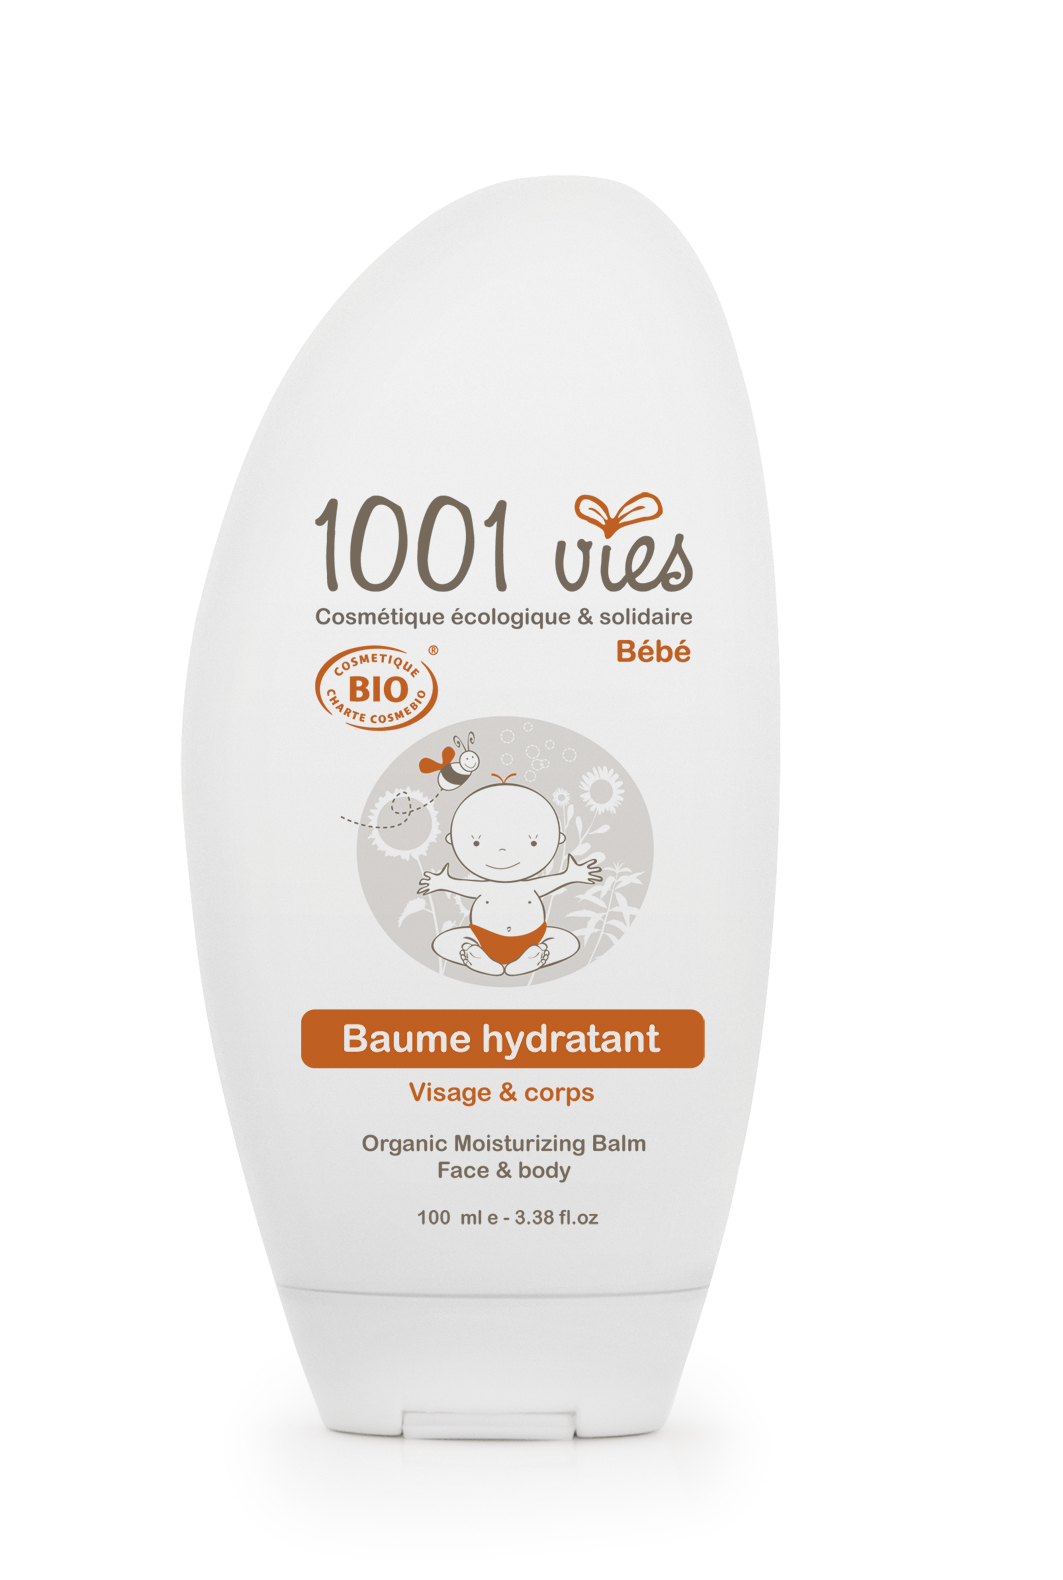 Doux Good - 1001 vies - Baume hydratant pour bebe